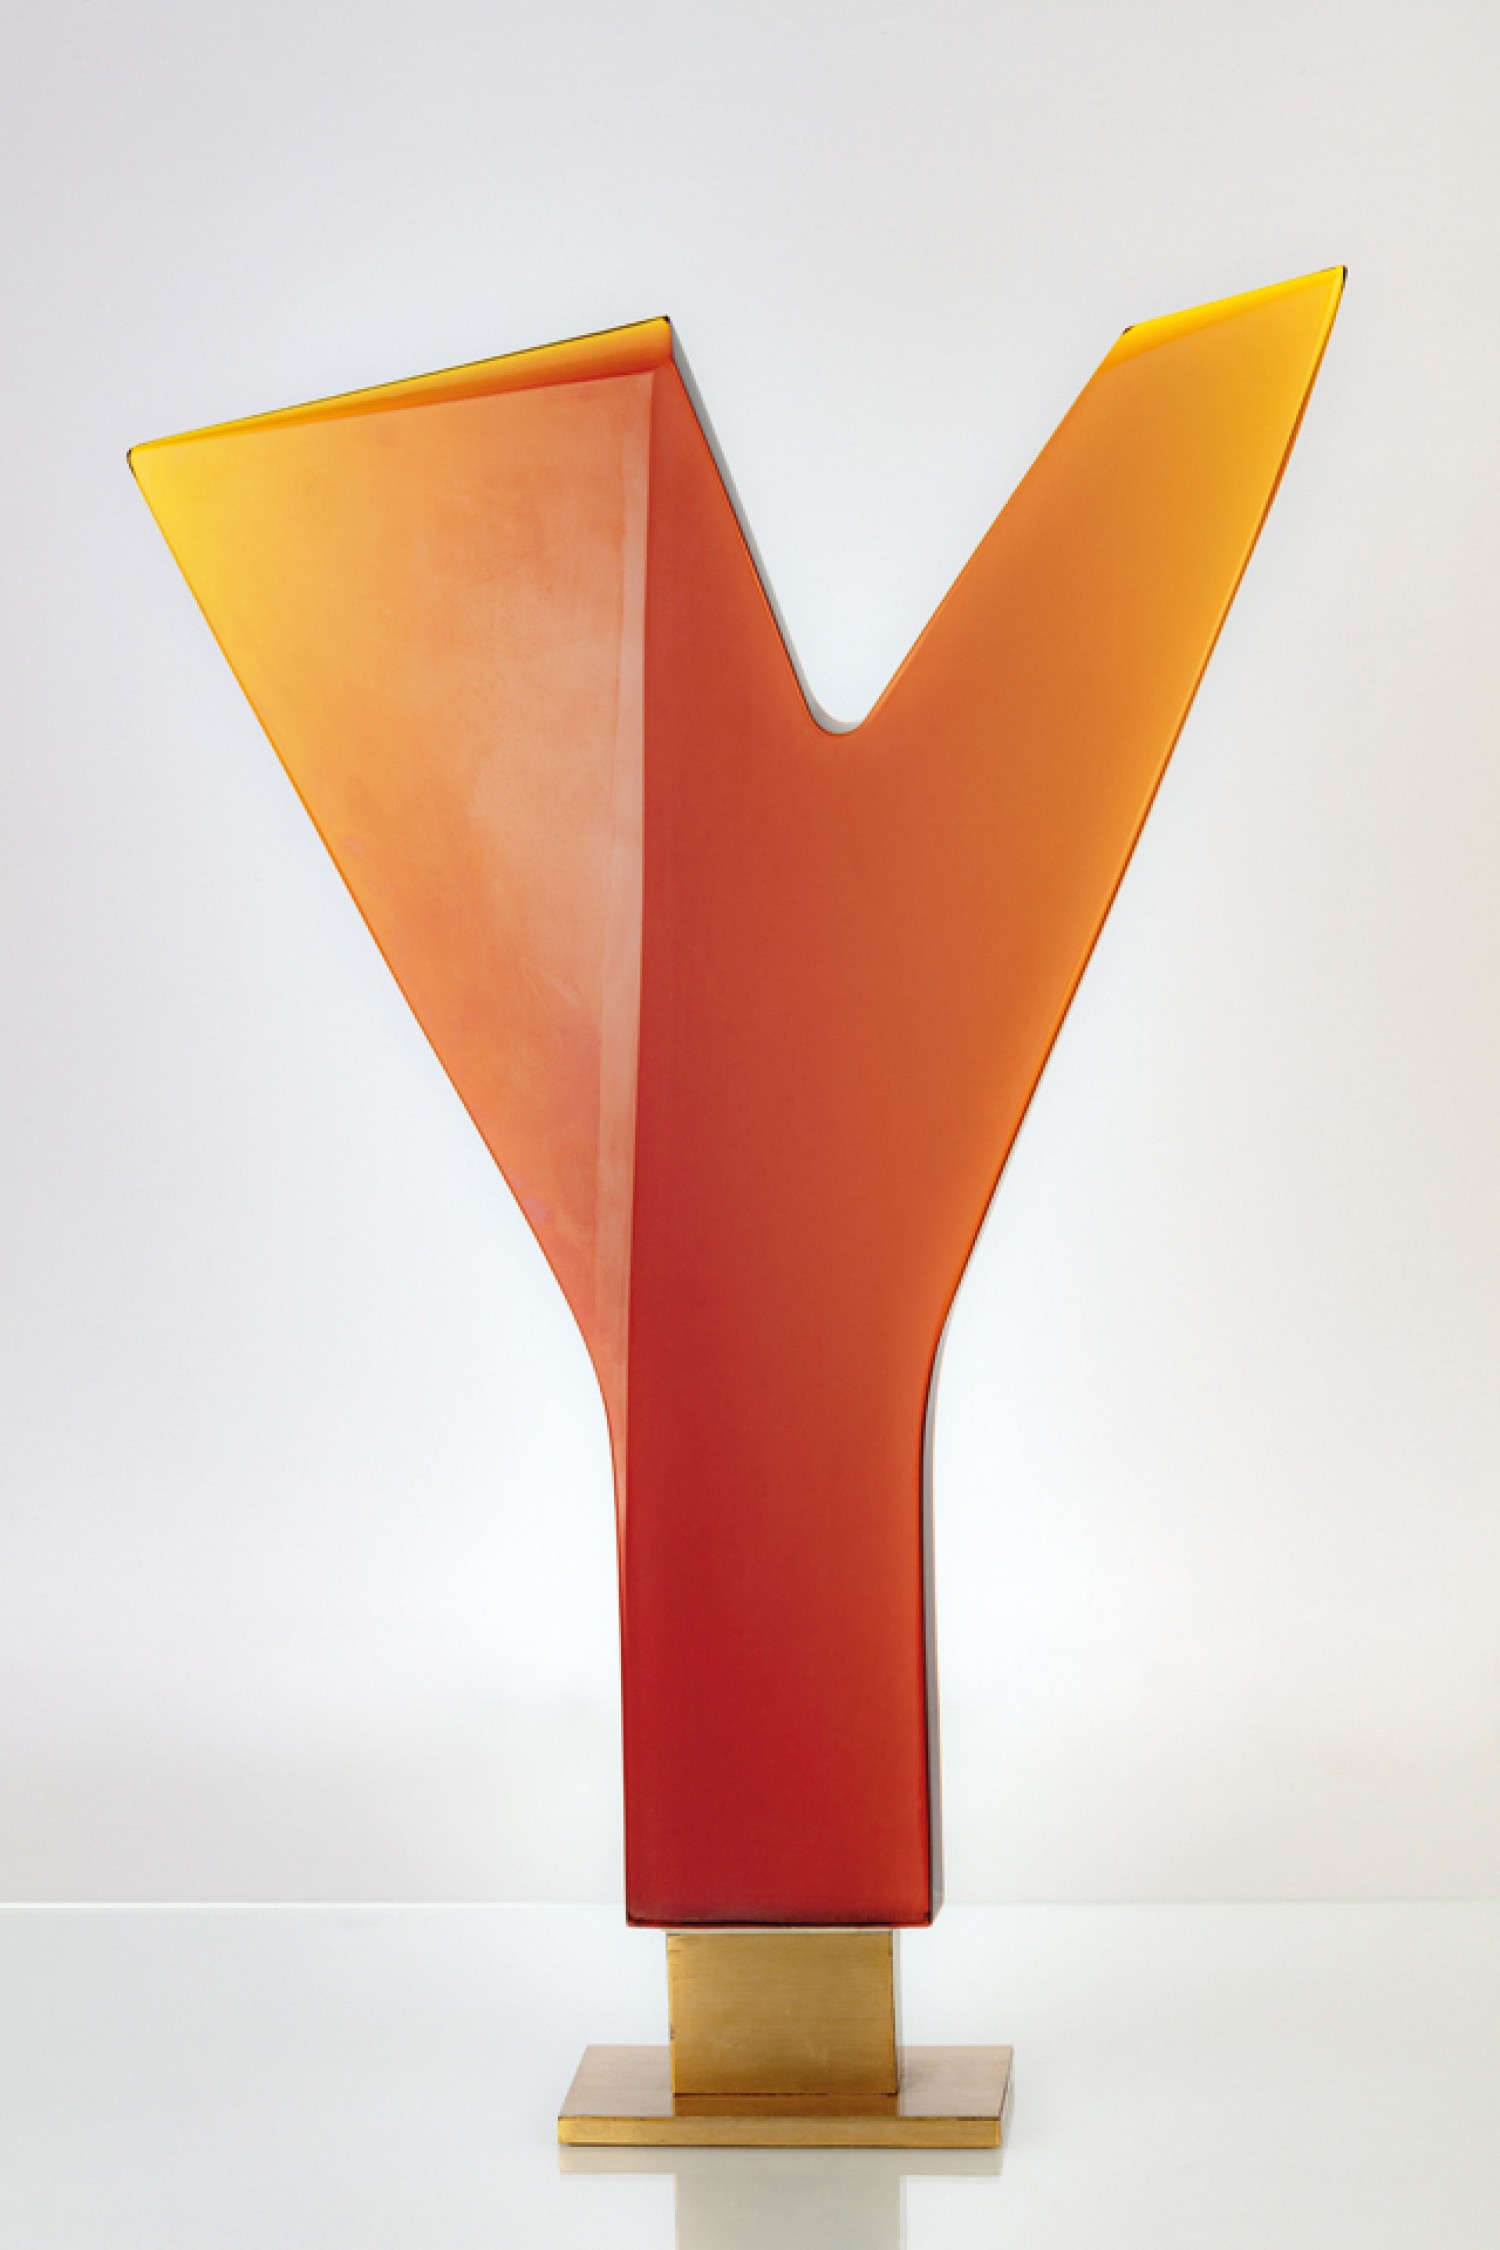 Jaroslav Svoboda: Ypsilon, broušené a leštěné oranžově tónované sklo, výška 77 cm, Aukční dům Sýpka 6. 11. 2022, cena: 324 000 Kč